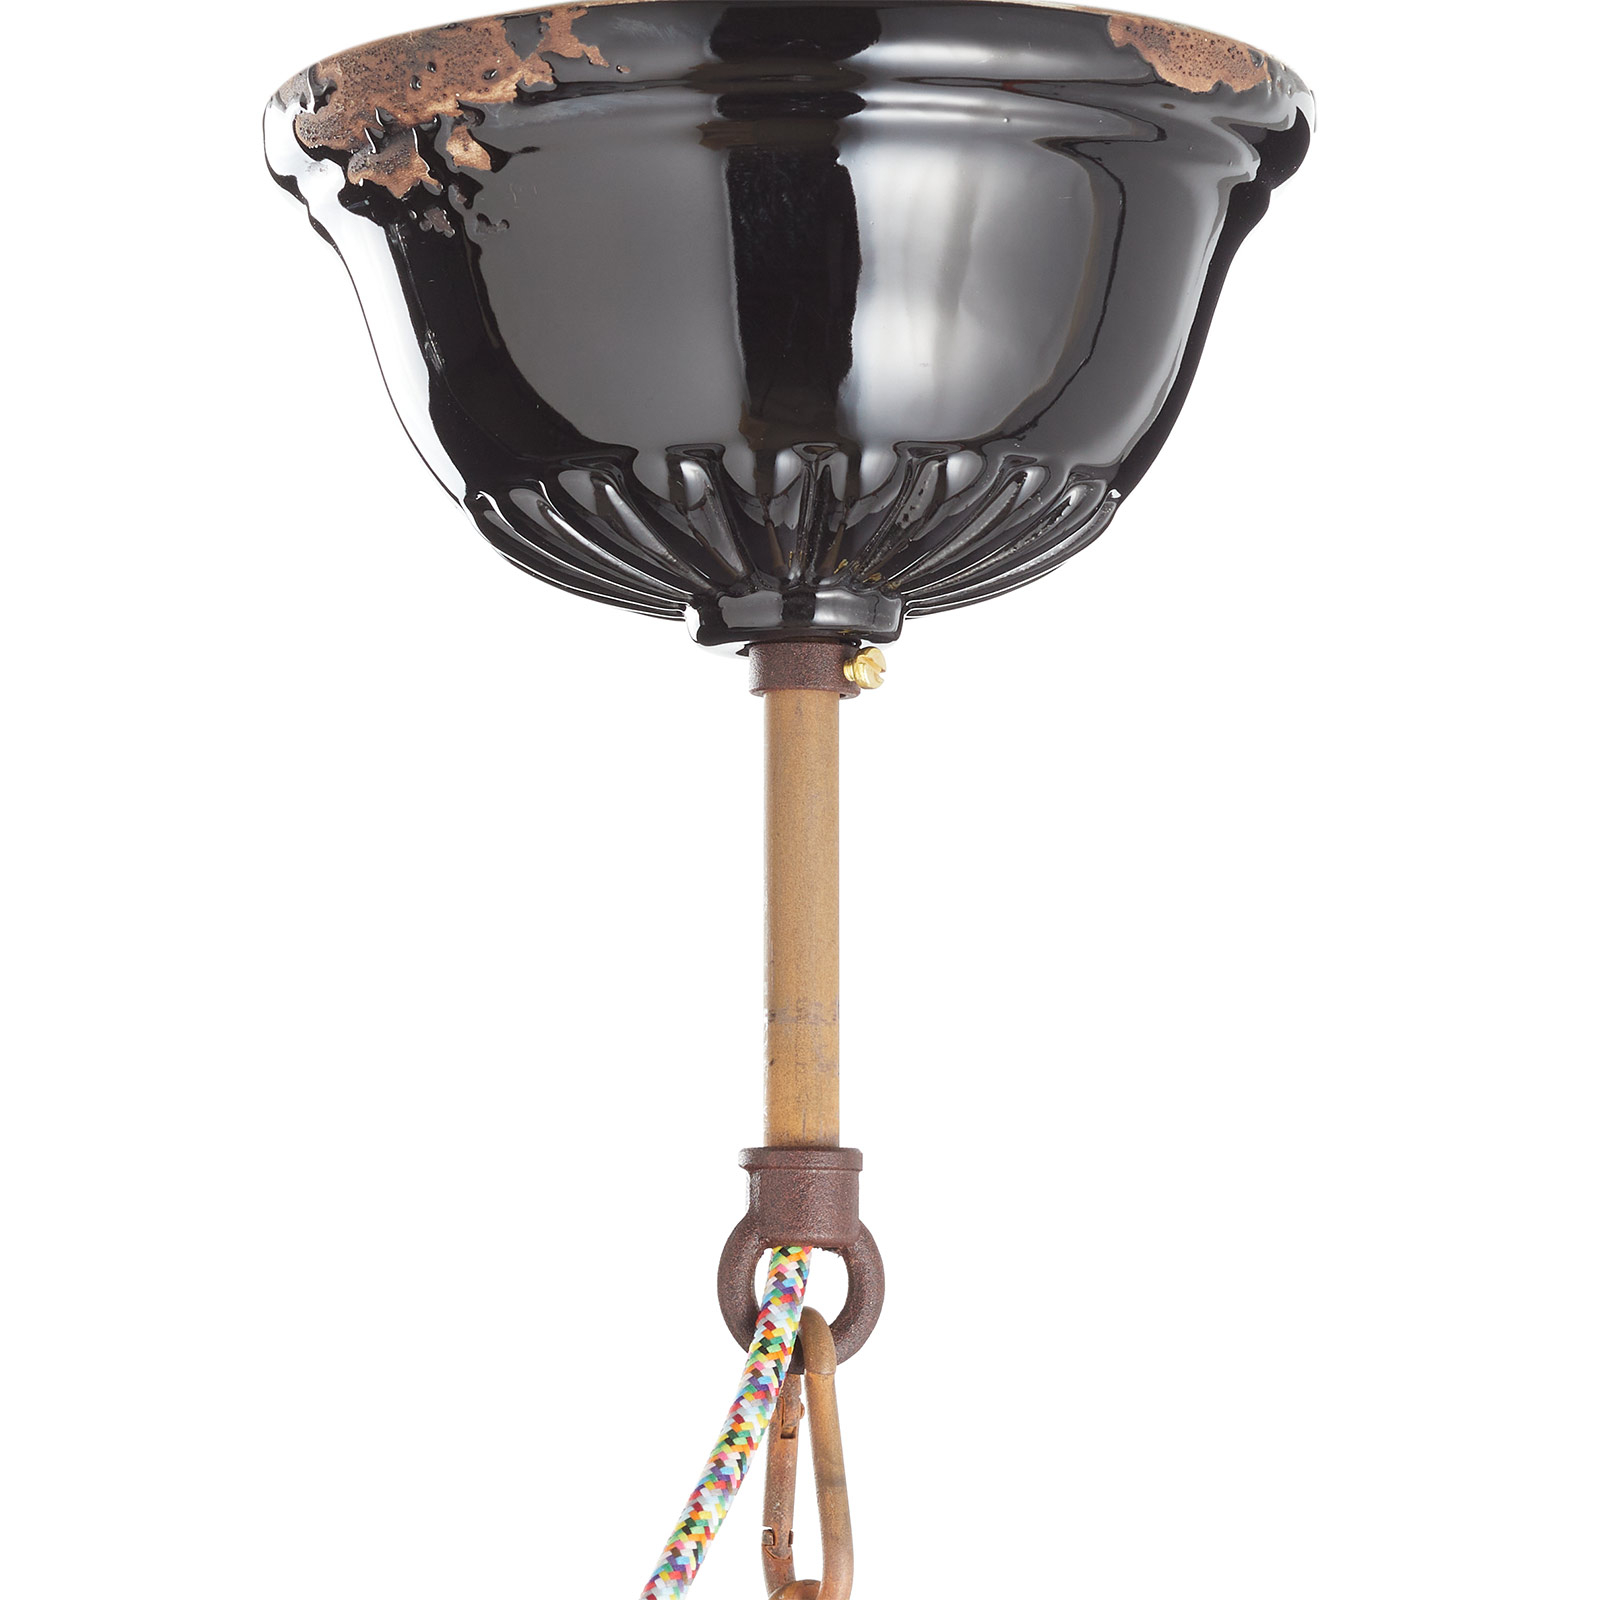 Vintage hanglamp C1745, conisch, zwart